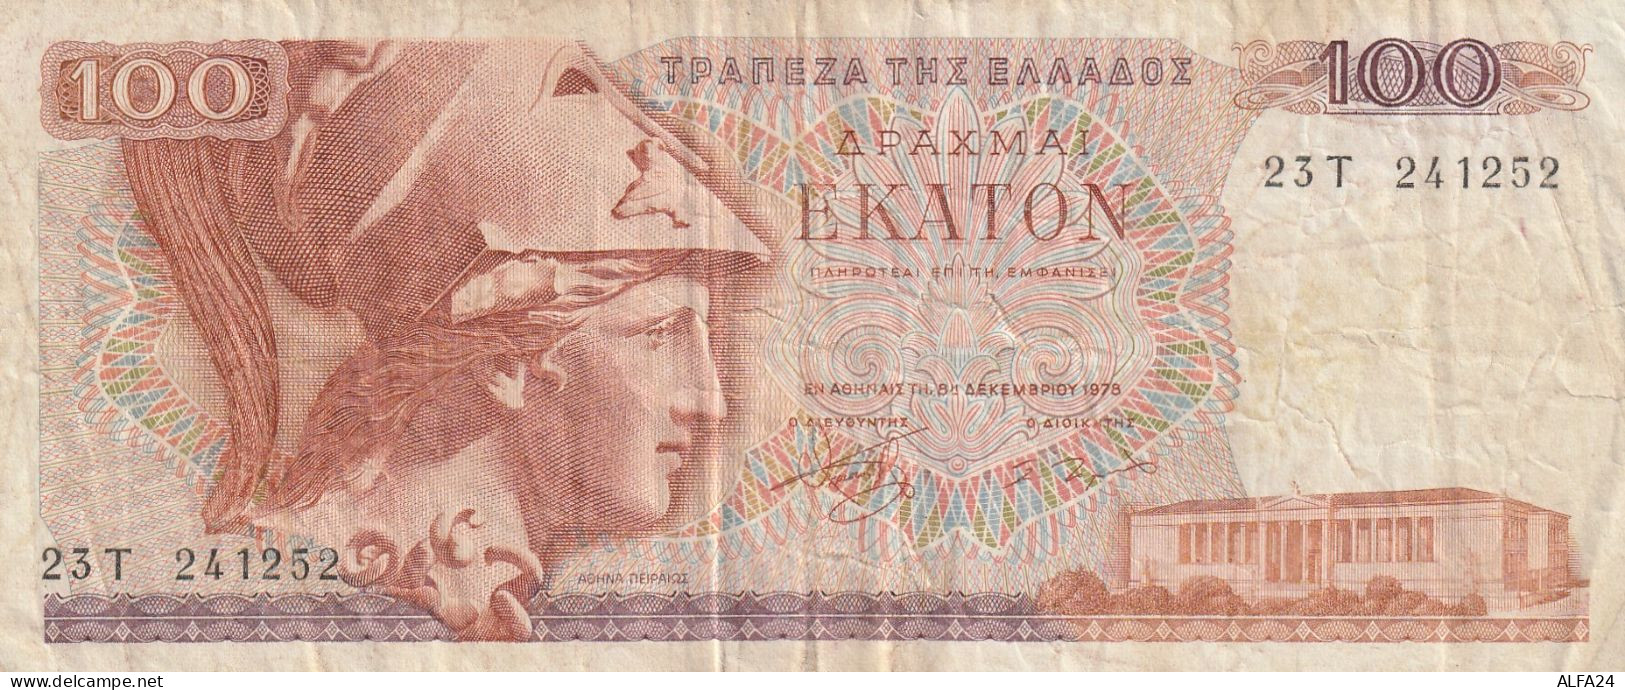 BANCONOTA GRECIA 100 VF  (B_609 - Grecia